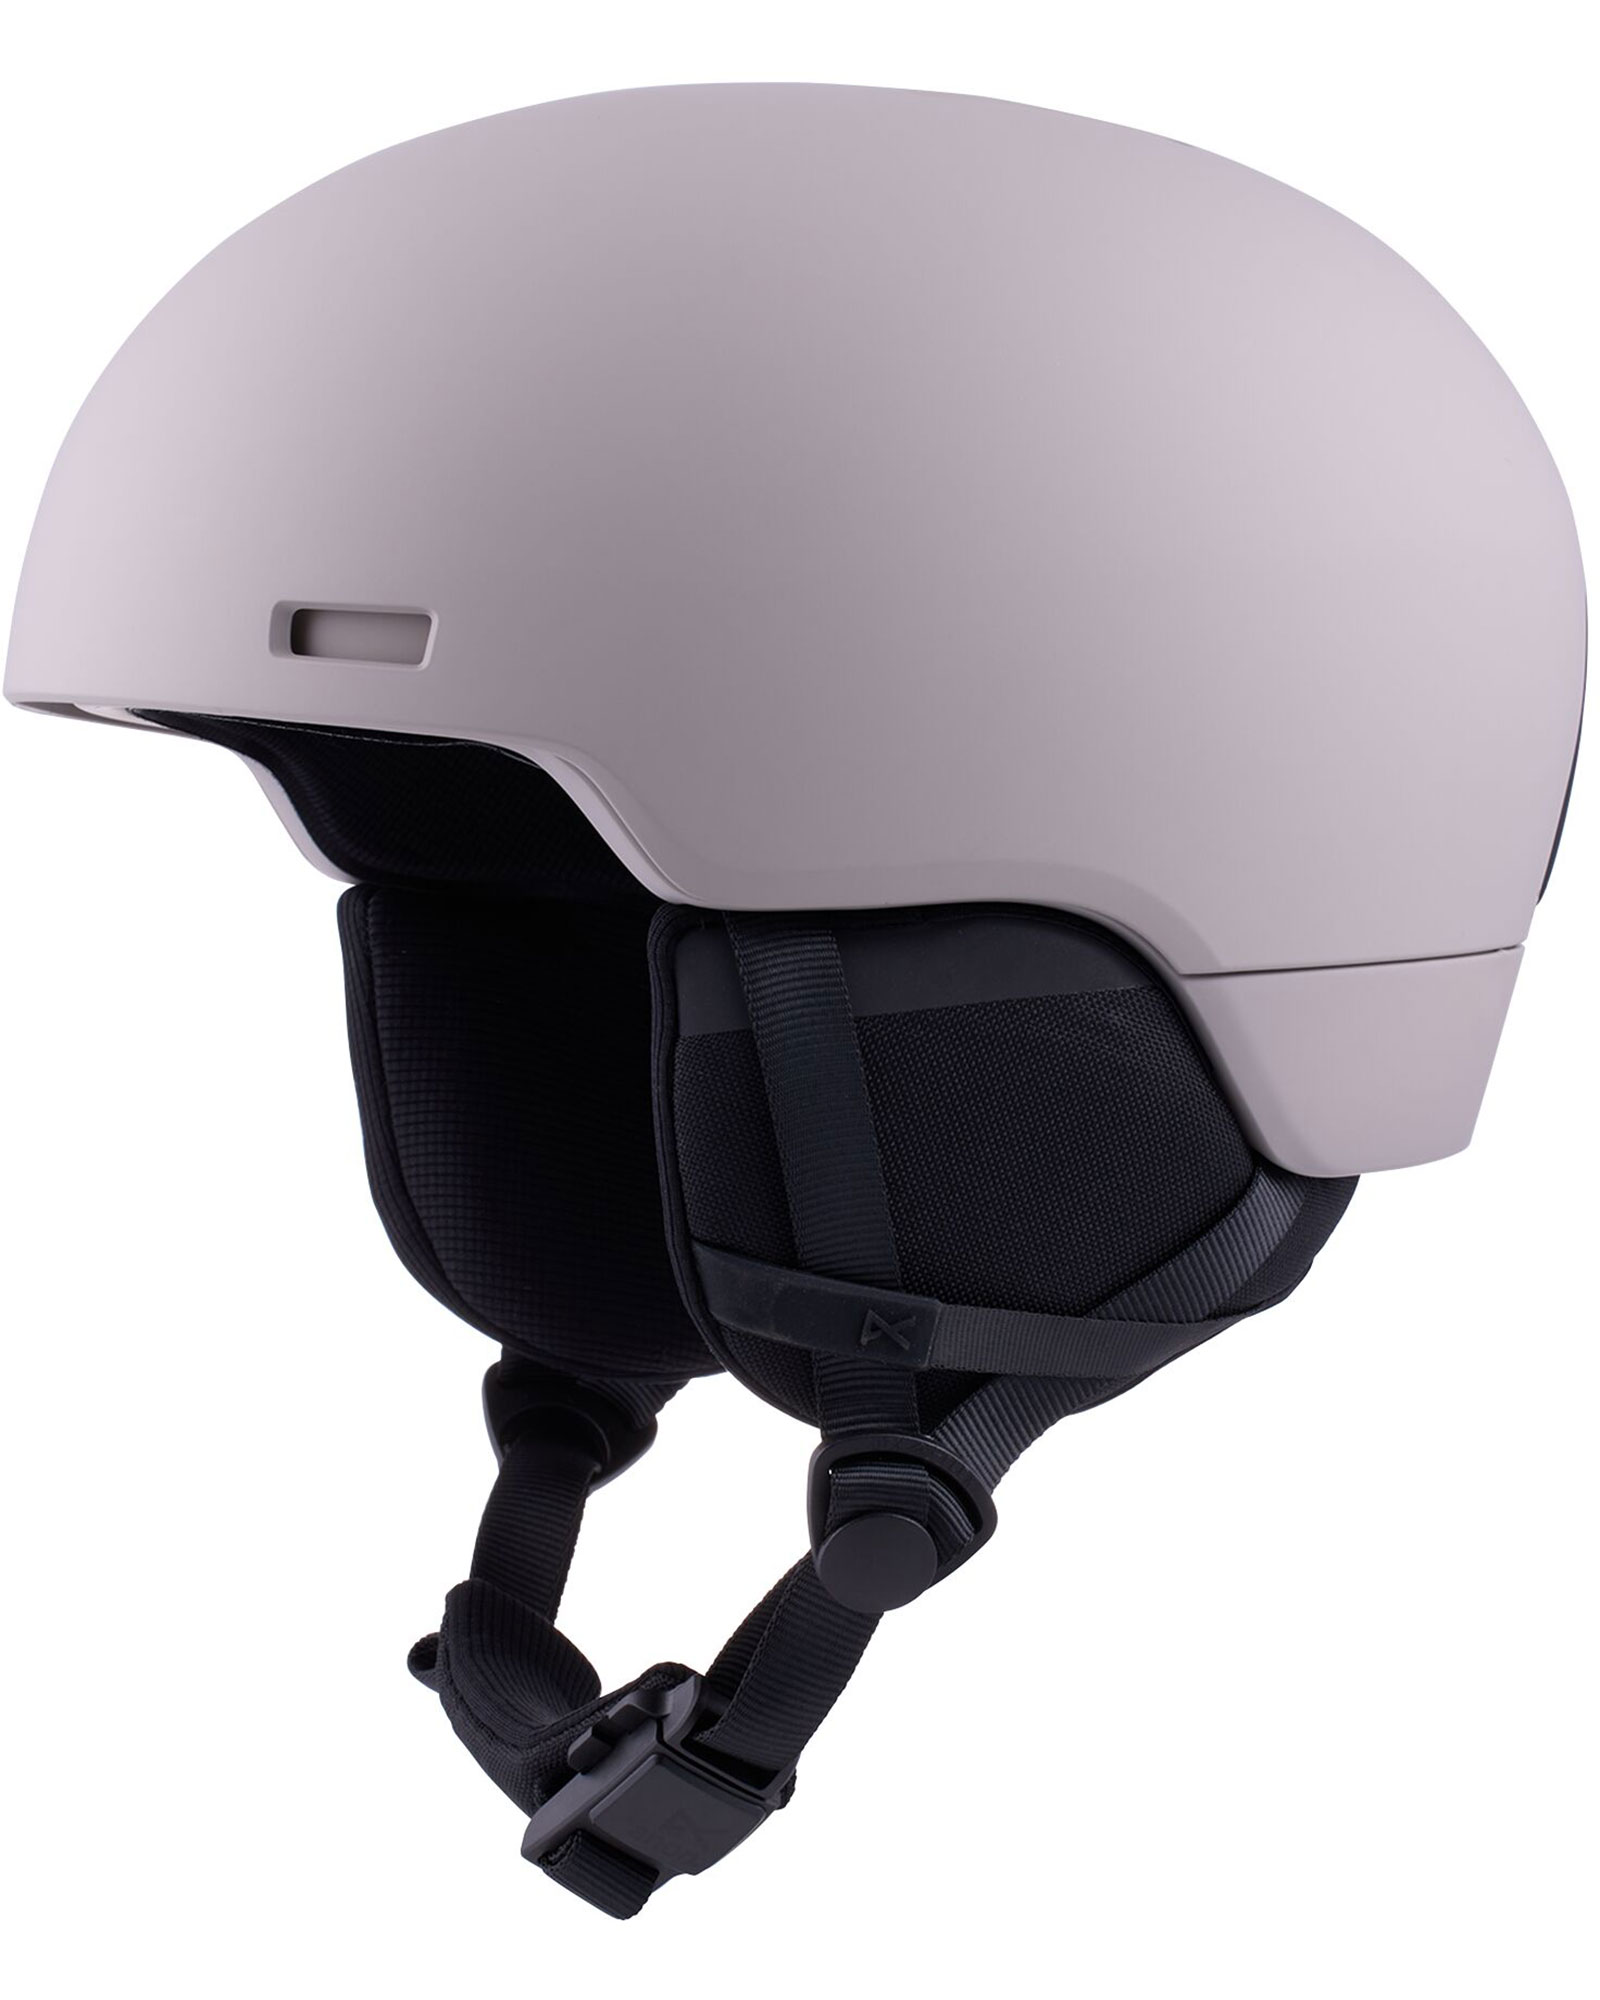 Anon Windham WaveCel Helmet